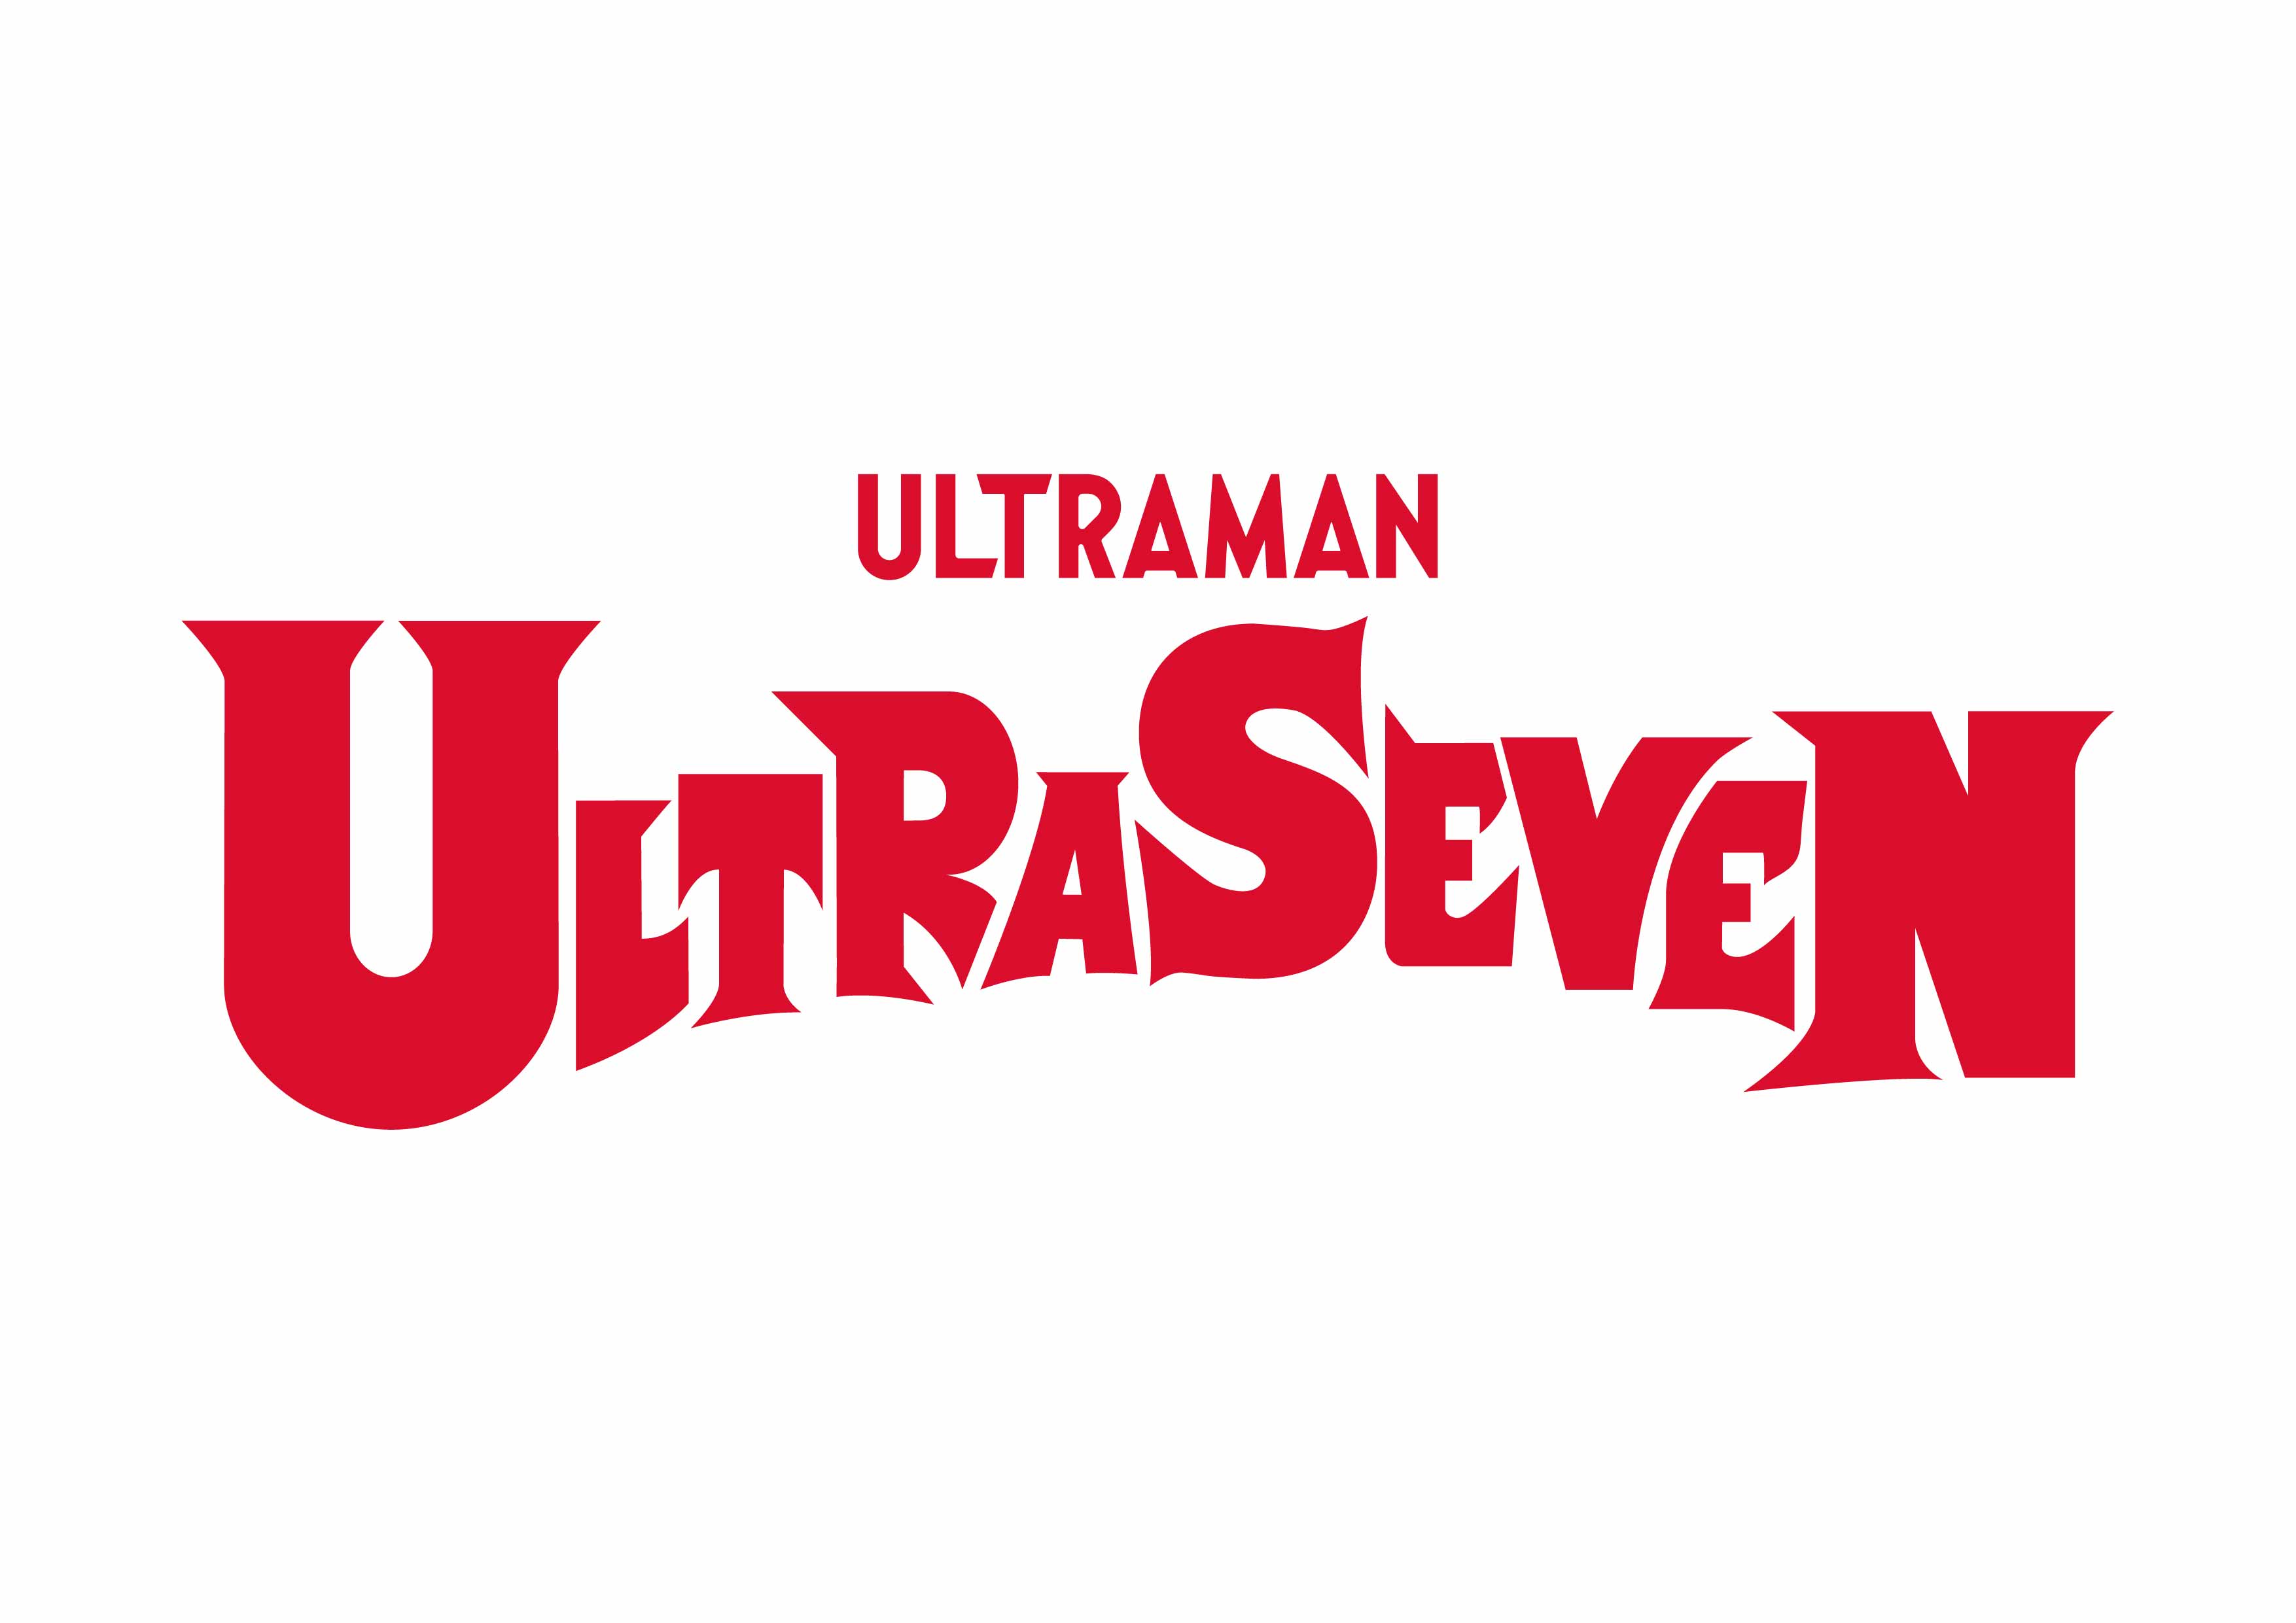 Ultraseven（1967）